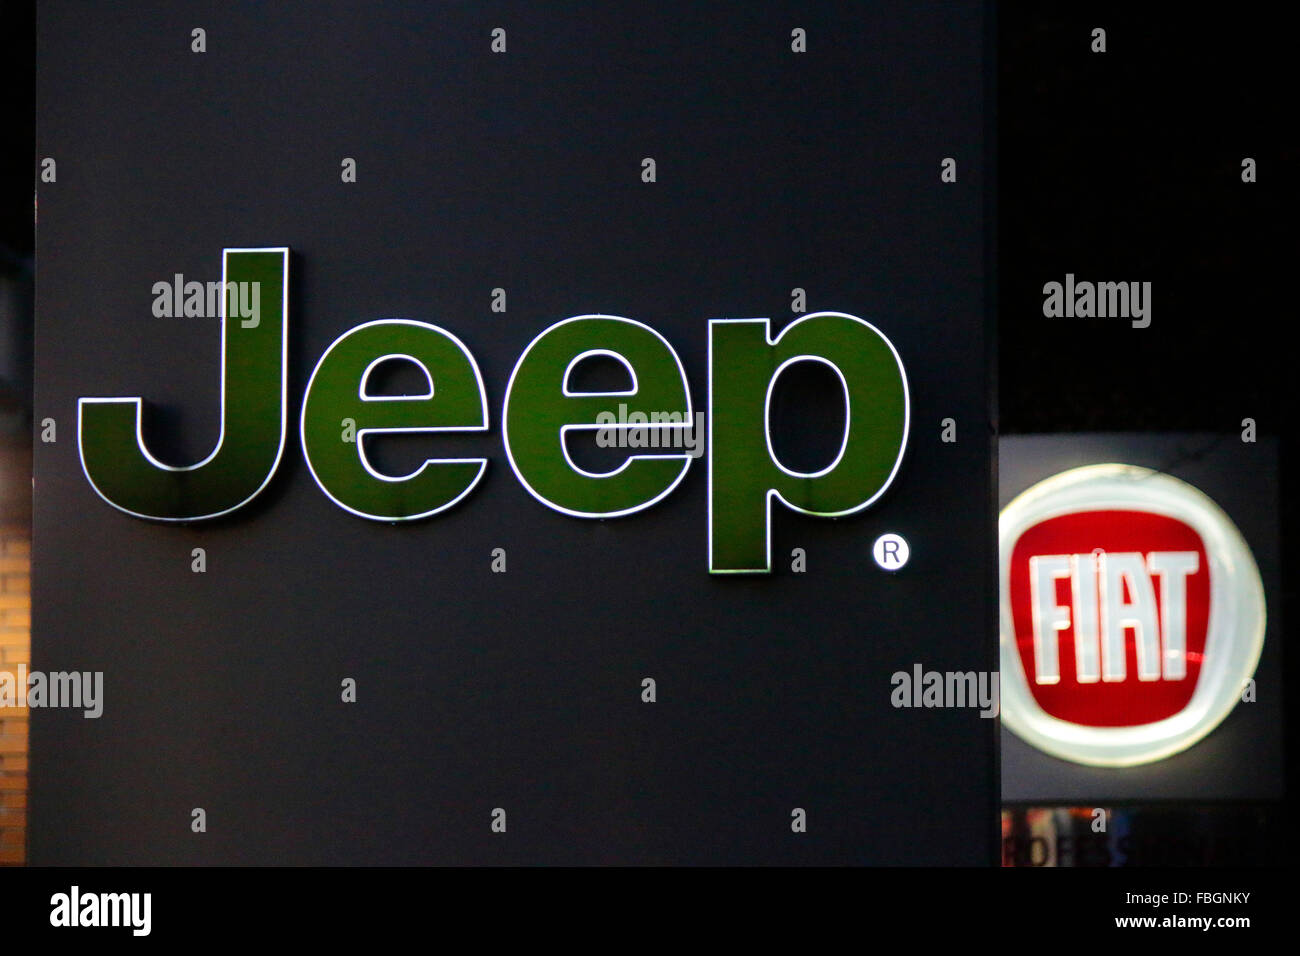 das Logo der Marke 'Jeep' und 'Fiat', Berlin. Stock Photo